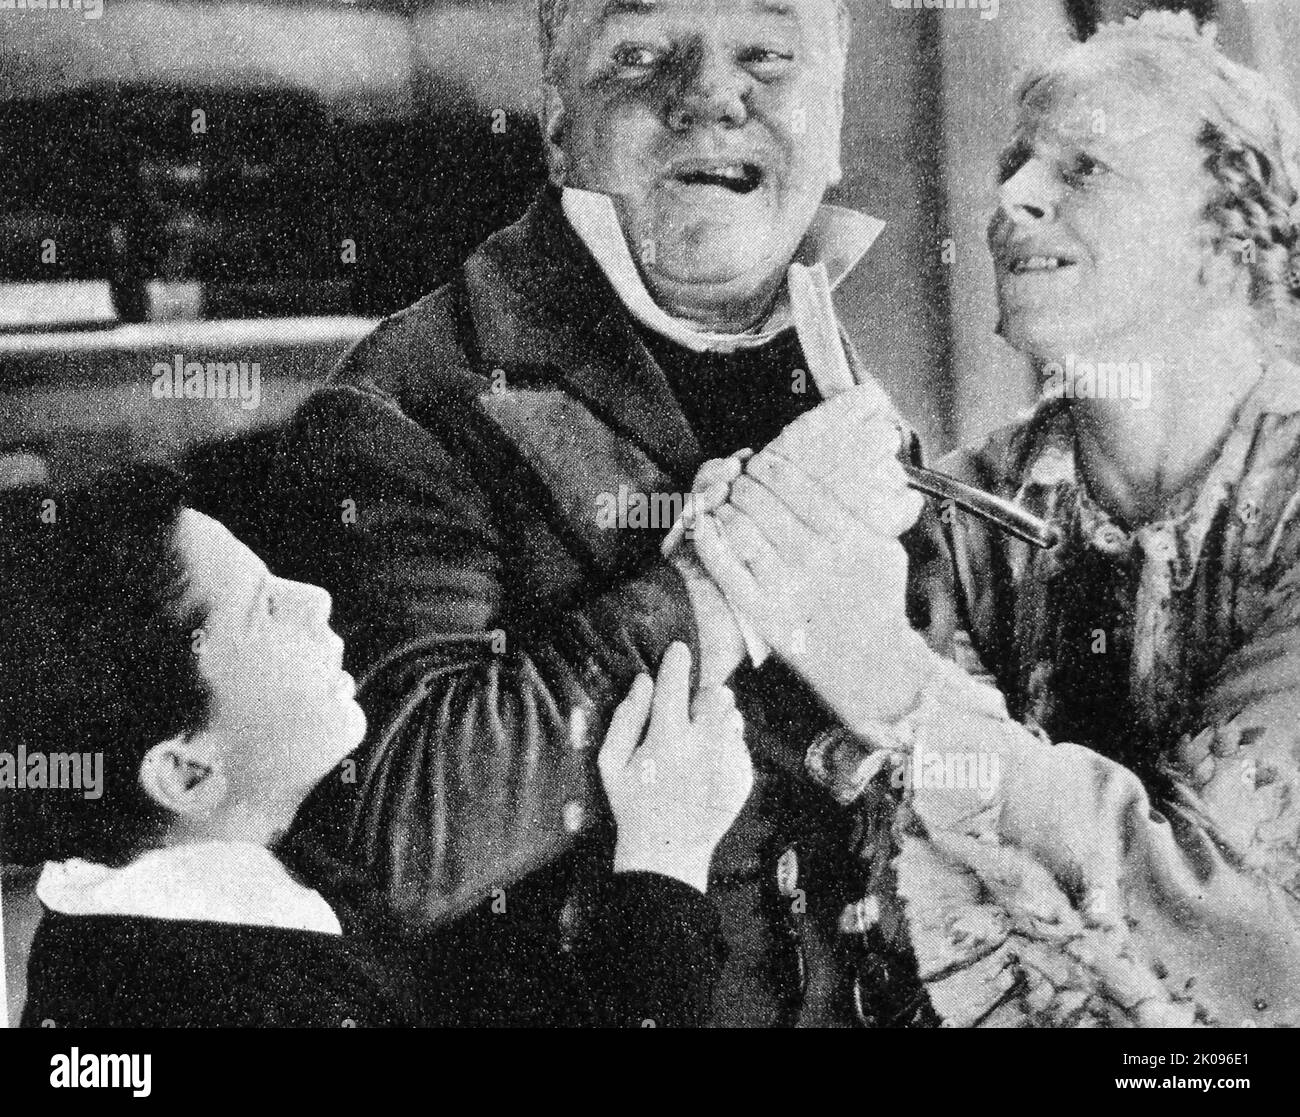 W.C. Fields, Jean Cadell et Freddie Bartholomew dans David Copperfield, un film américain de 1935. William Claude Dukenfield (29 janvier 1880 - 25 décembre 1946), mieux connu sous le nom de W. C. Fields, était un comédien américain, un acteur, un jongleur et un écrivain. Jean Dunlop Cadell (13 septembre 1884 - 29 septembre 1967) est une actrice écossaise. Frederick Cecil Bartholomew (28 mars 1924 - 23 janvier 1992), connu pour son travail d'acteur sous le nom de Freddie Bartholomew, était un enfant acteur anglo-américain. Banque D'Images